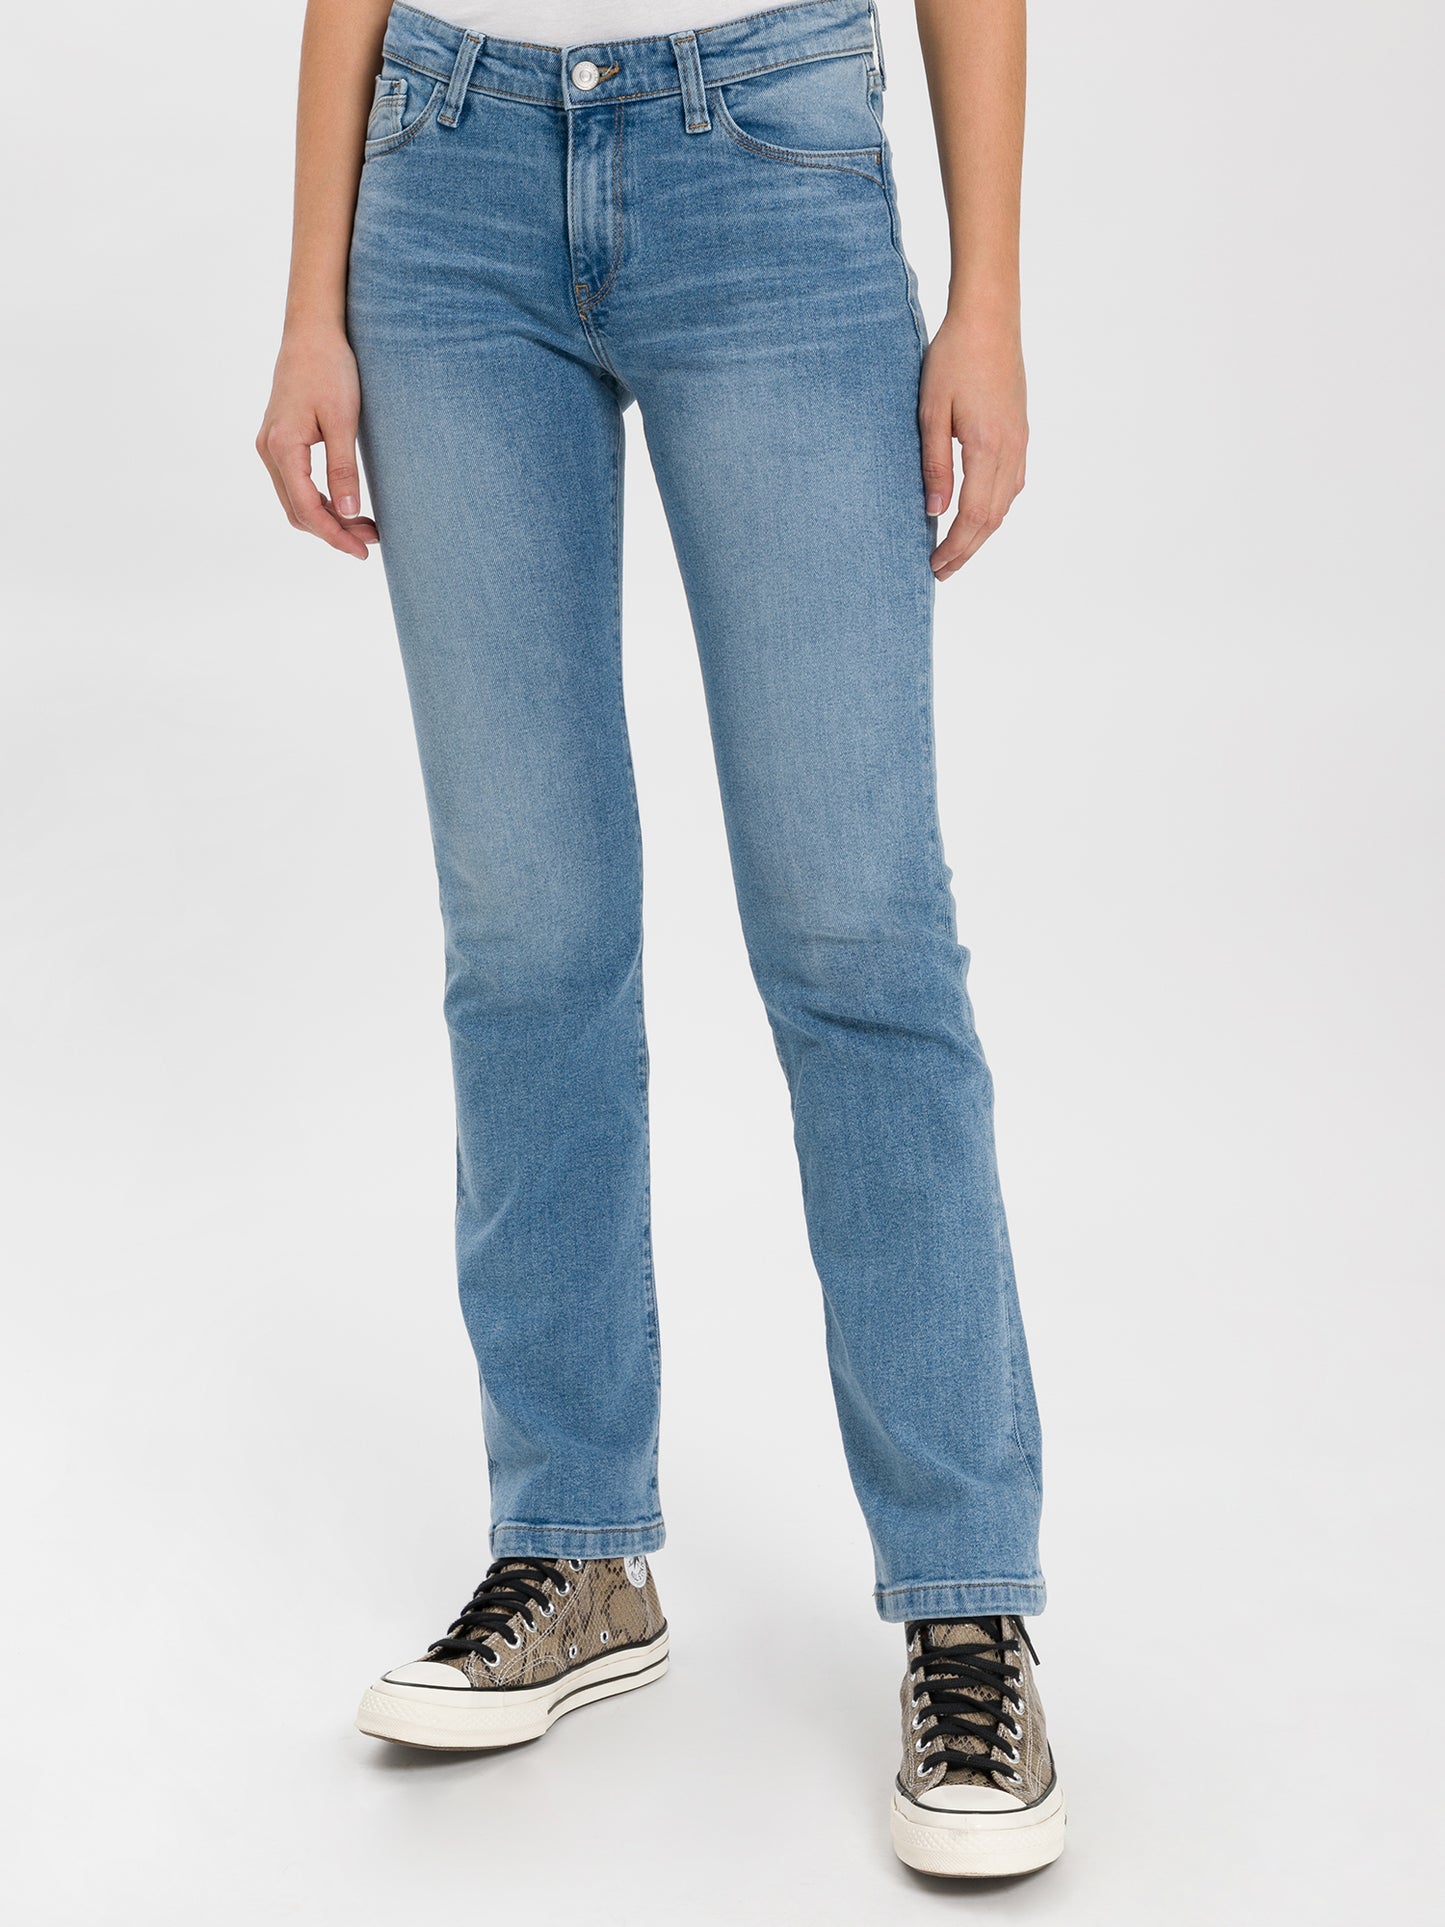 Lauren women's jeans regular fit high waist bootcut light blue